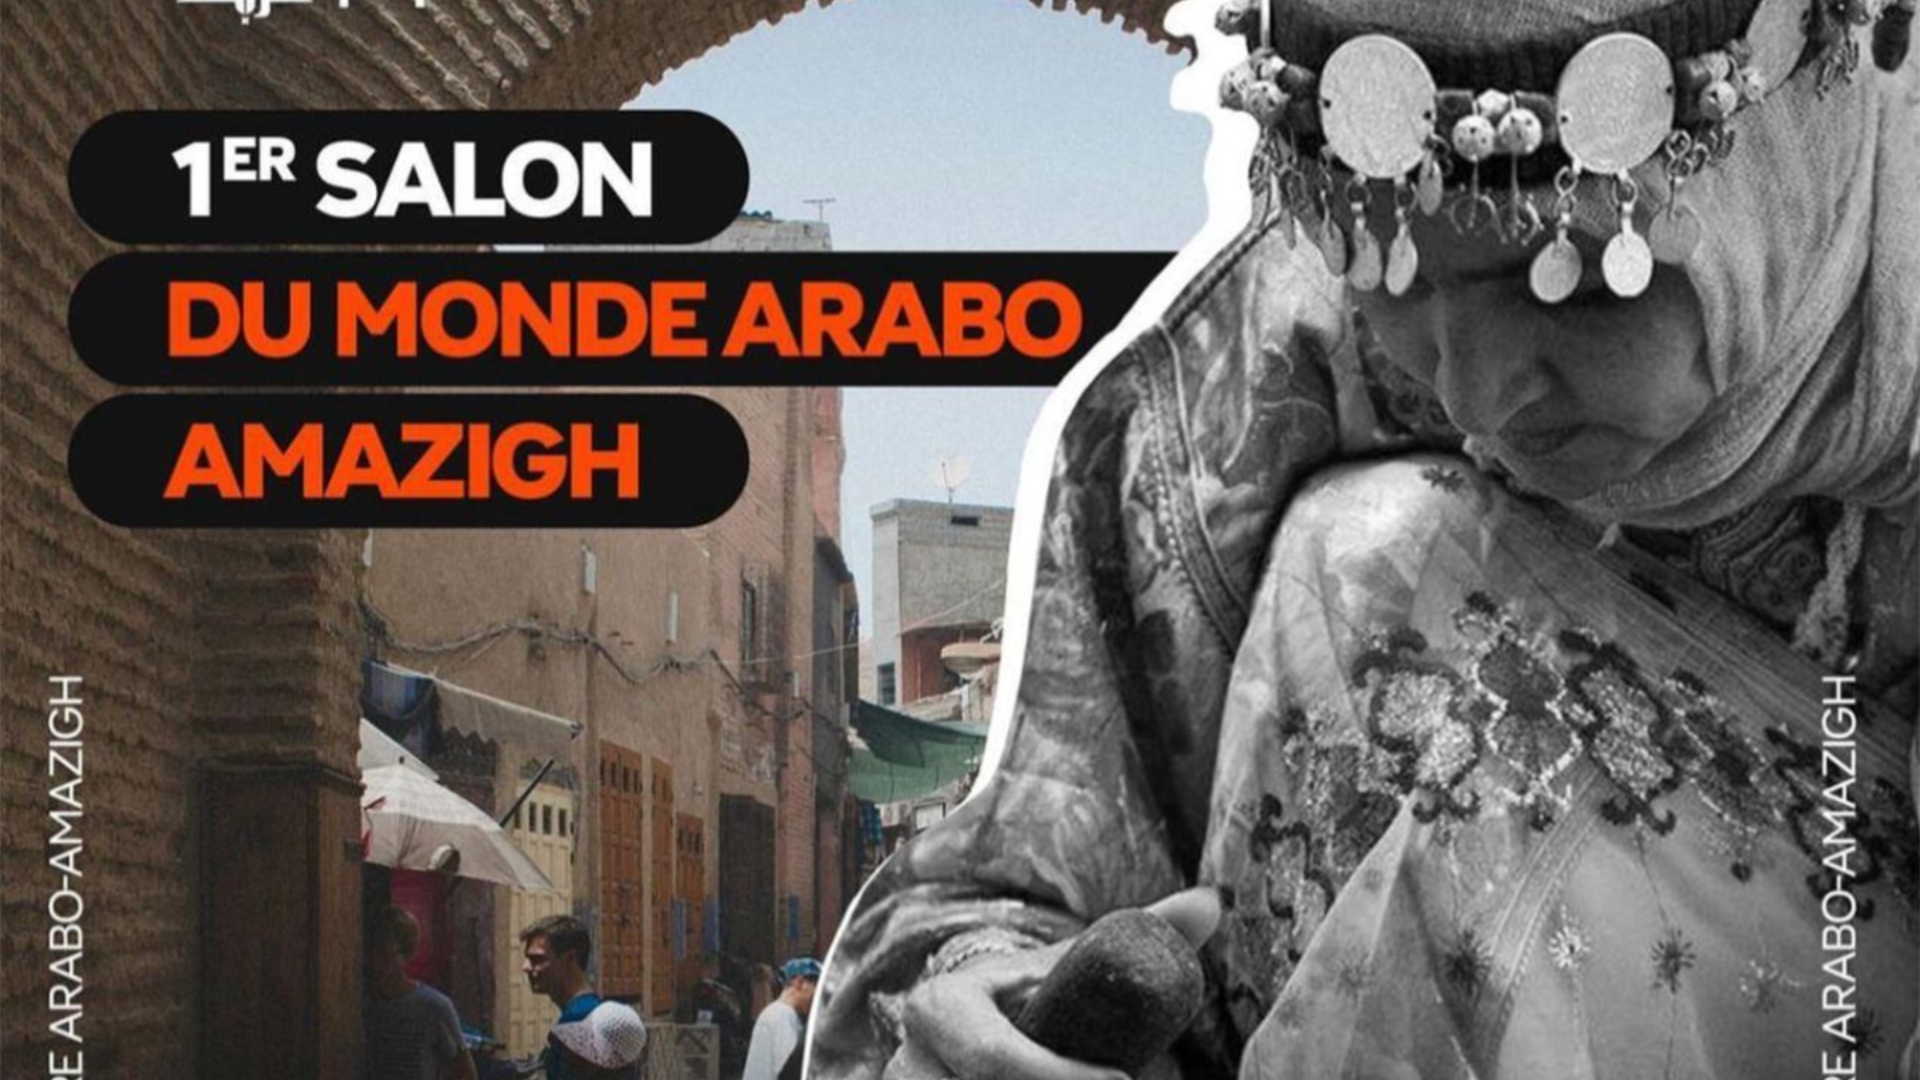 La culture de la diaspora maghrébine célèbre sa richesse au salon du monde arabo-amazigh